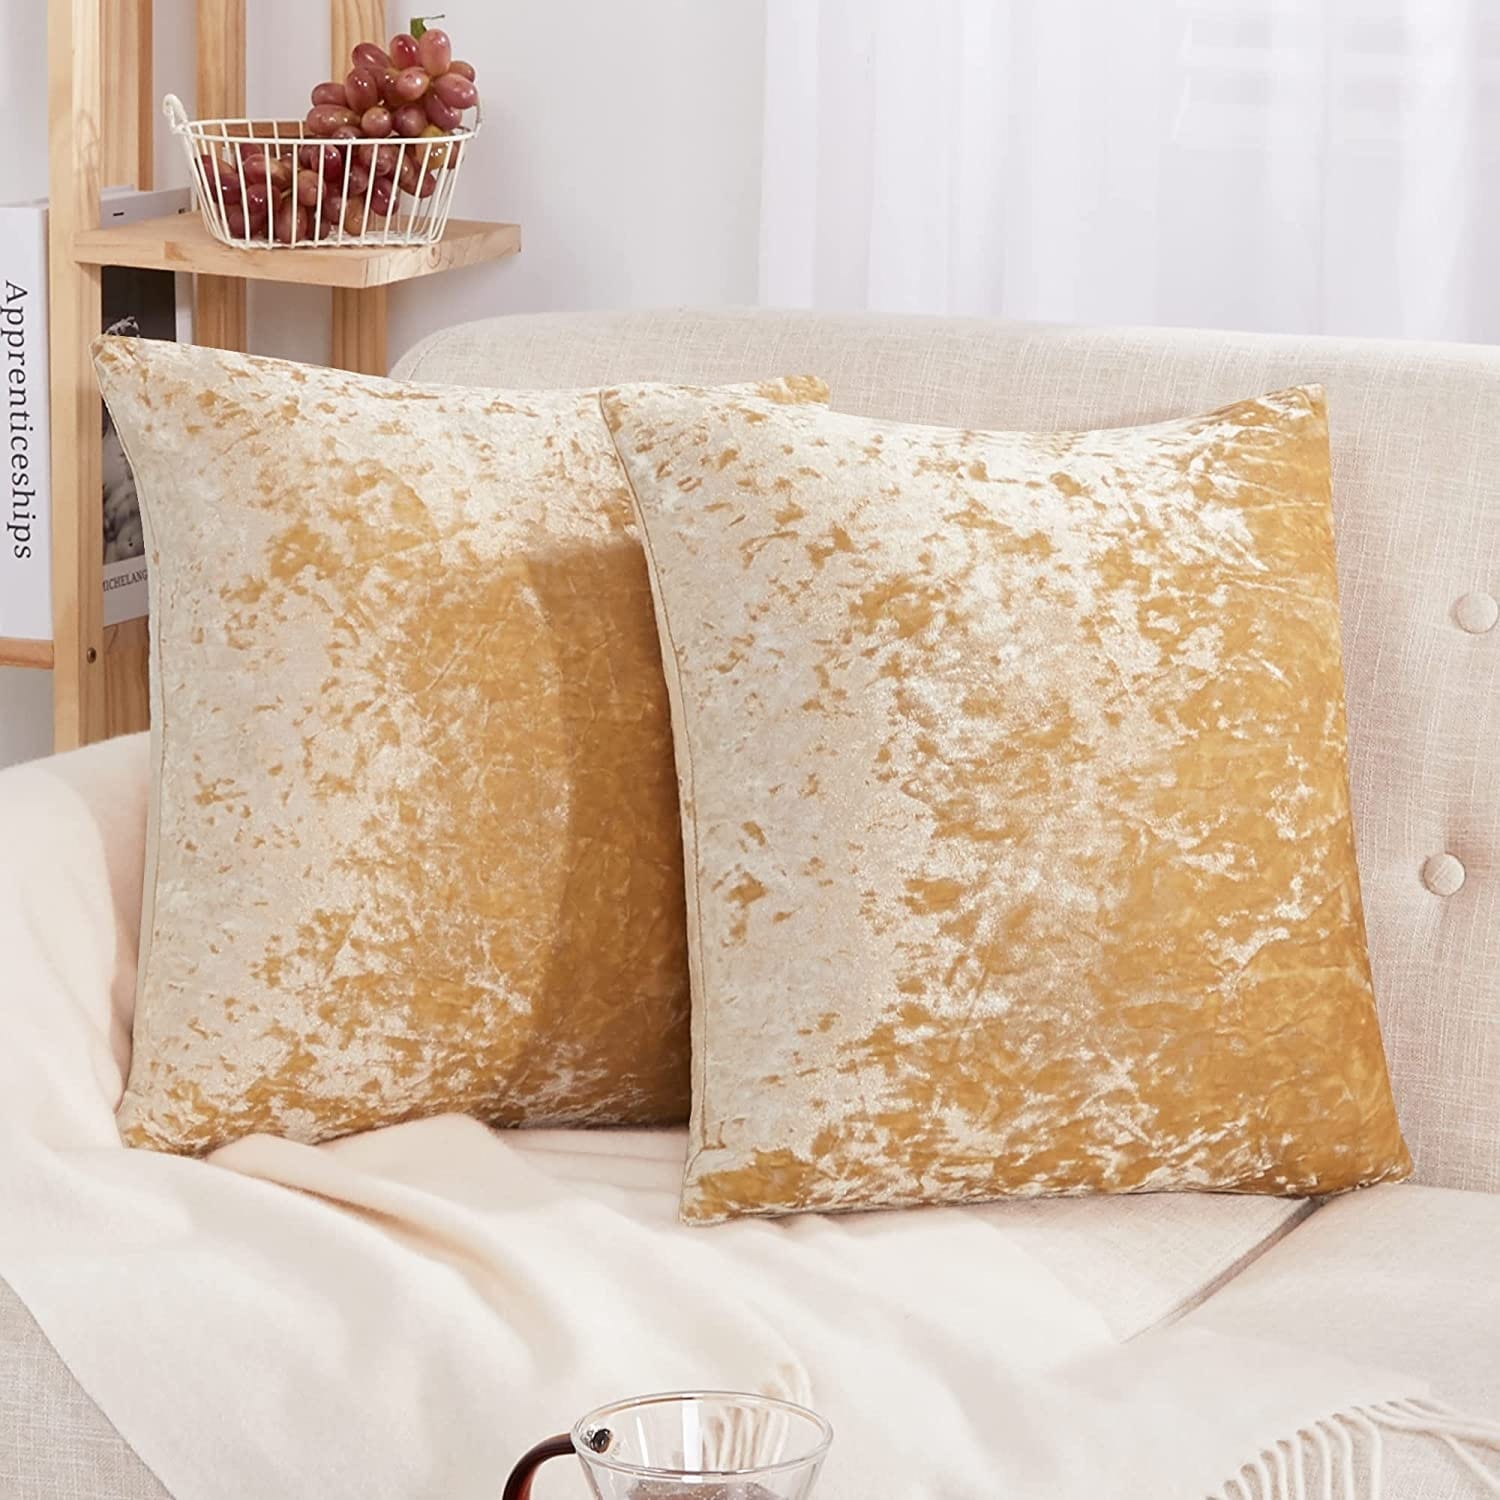 2Pcs Throw Pillows Washable Throw Pillow Sofa Decoration Supple Throw Pillow